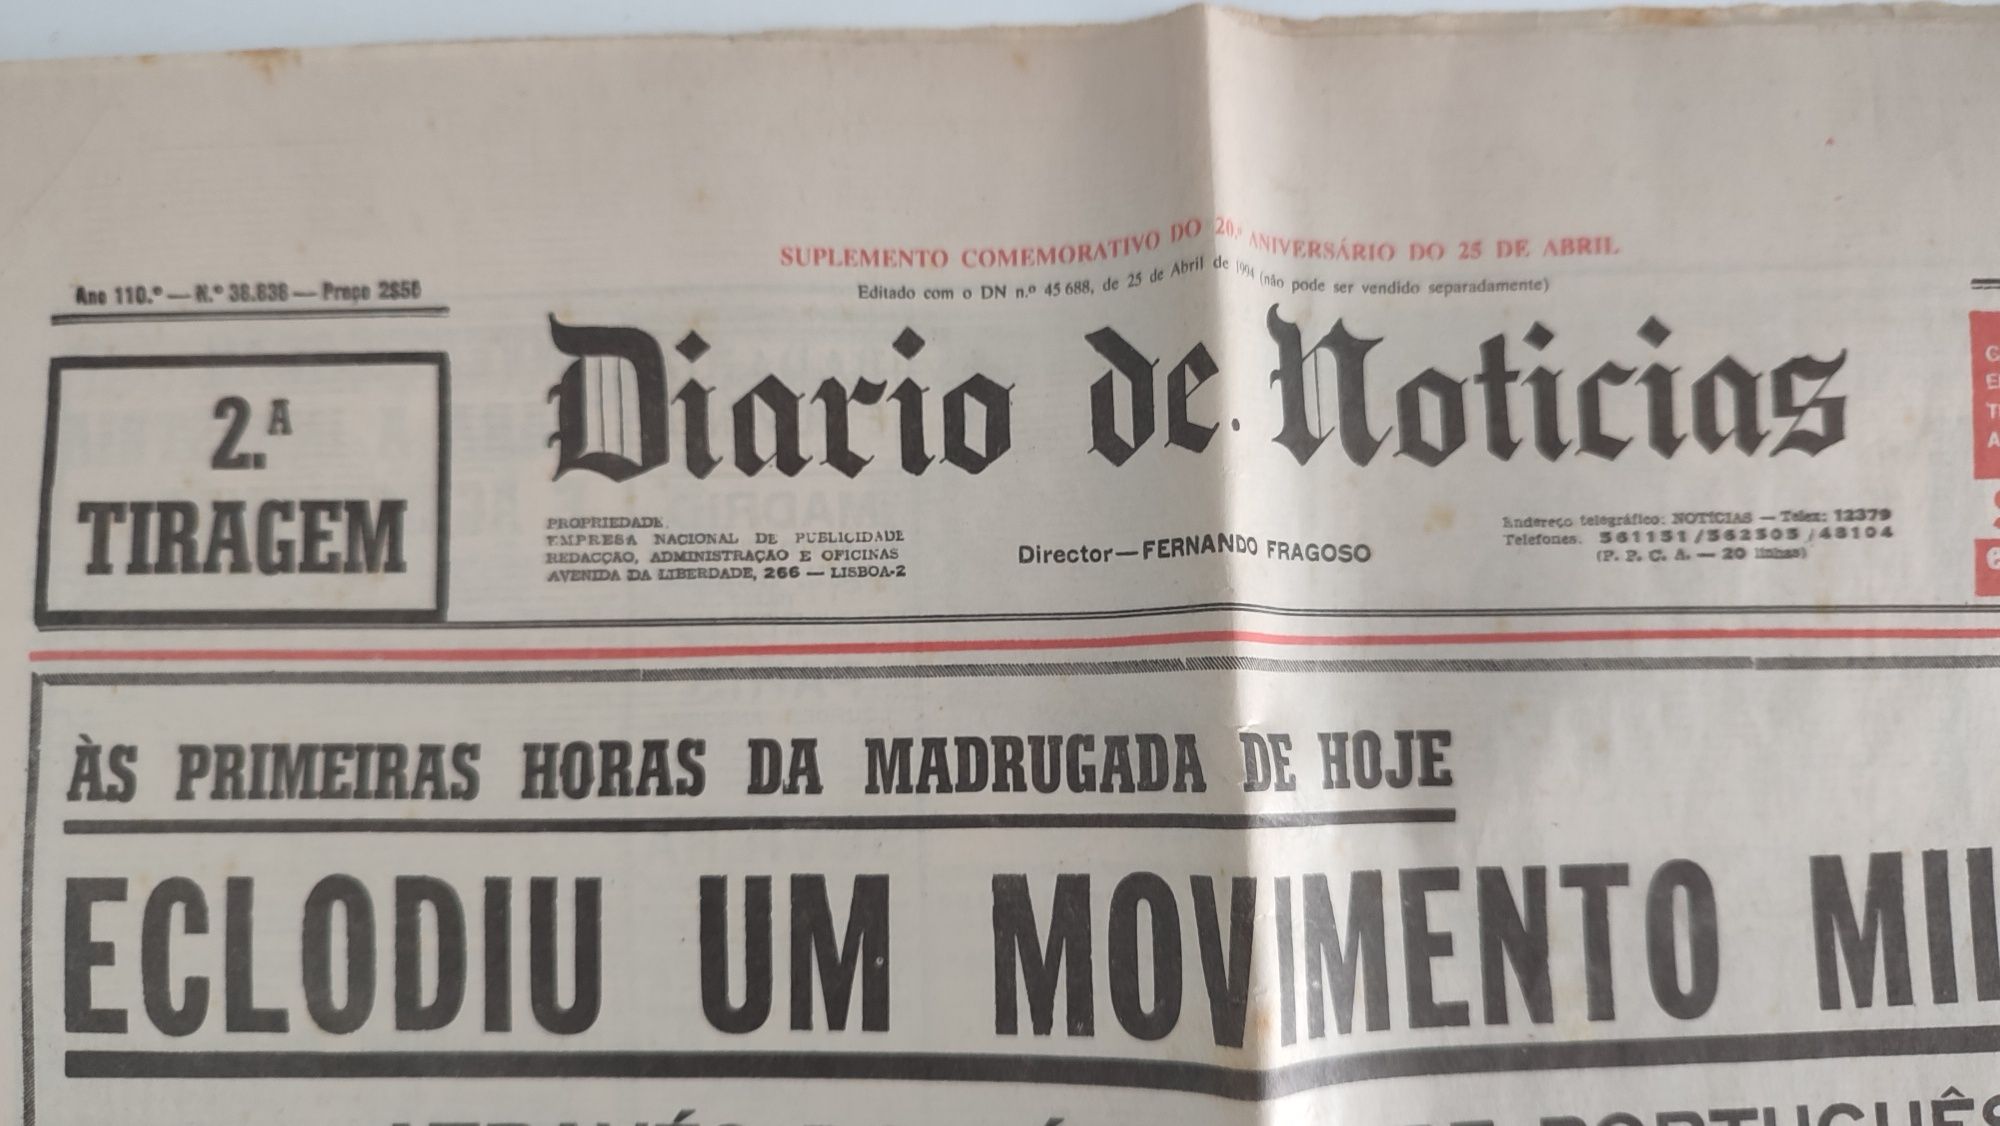 Diário de Notícias 25 abril 1974